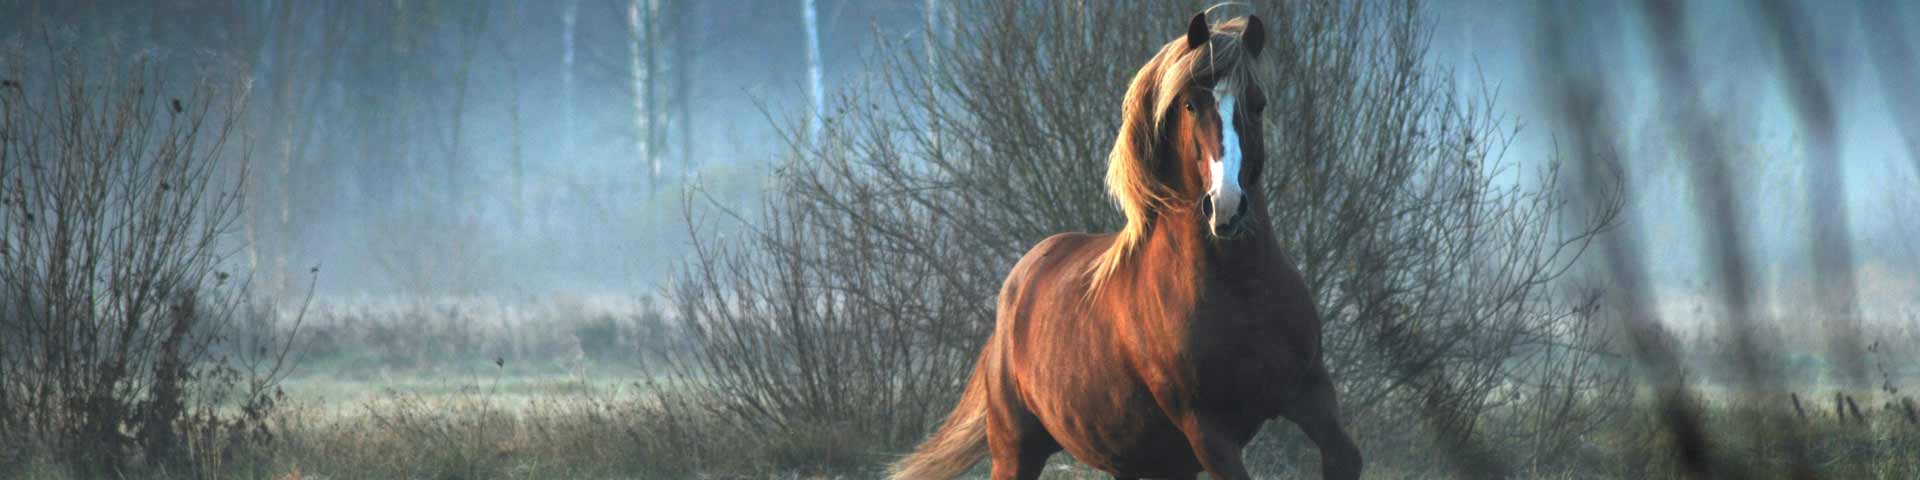 paard-1920x480